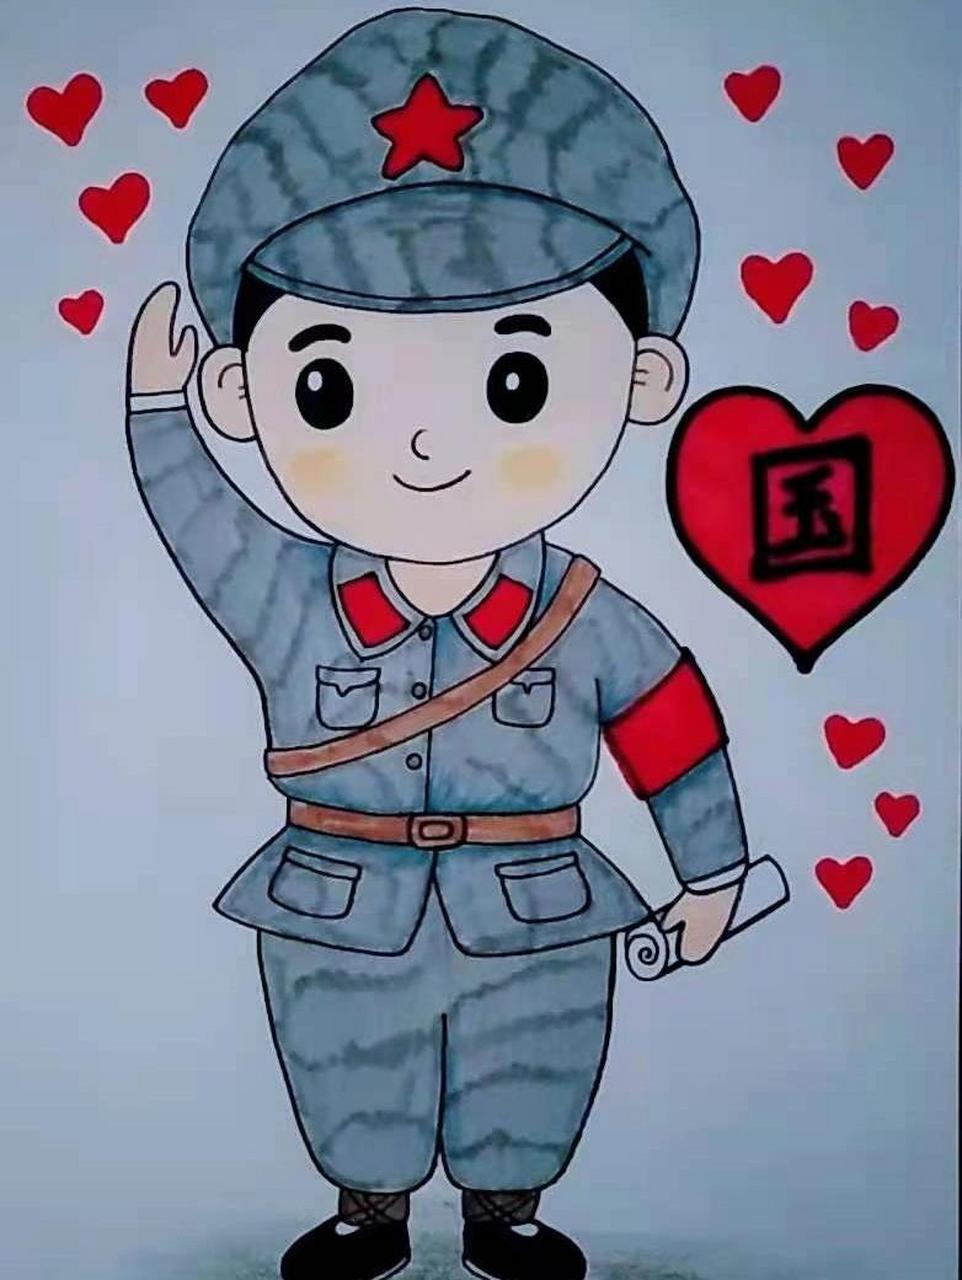 红军简笔画 战士图片